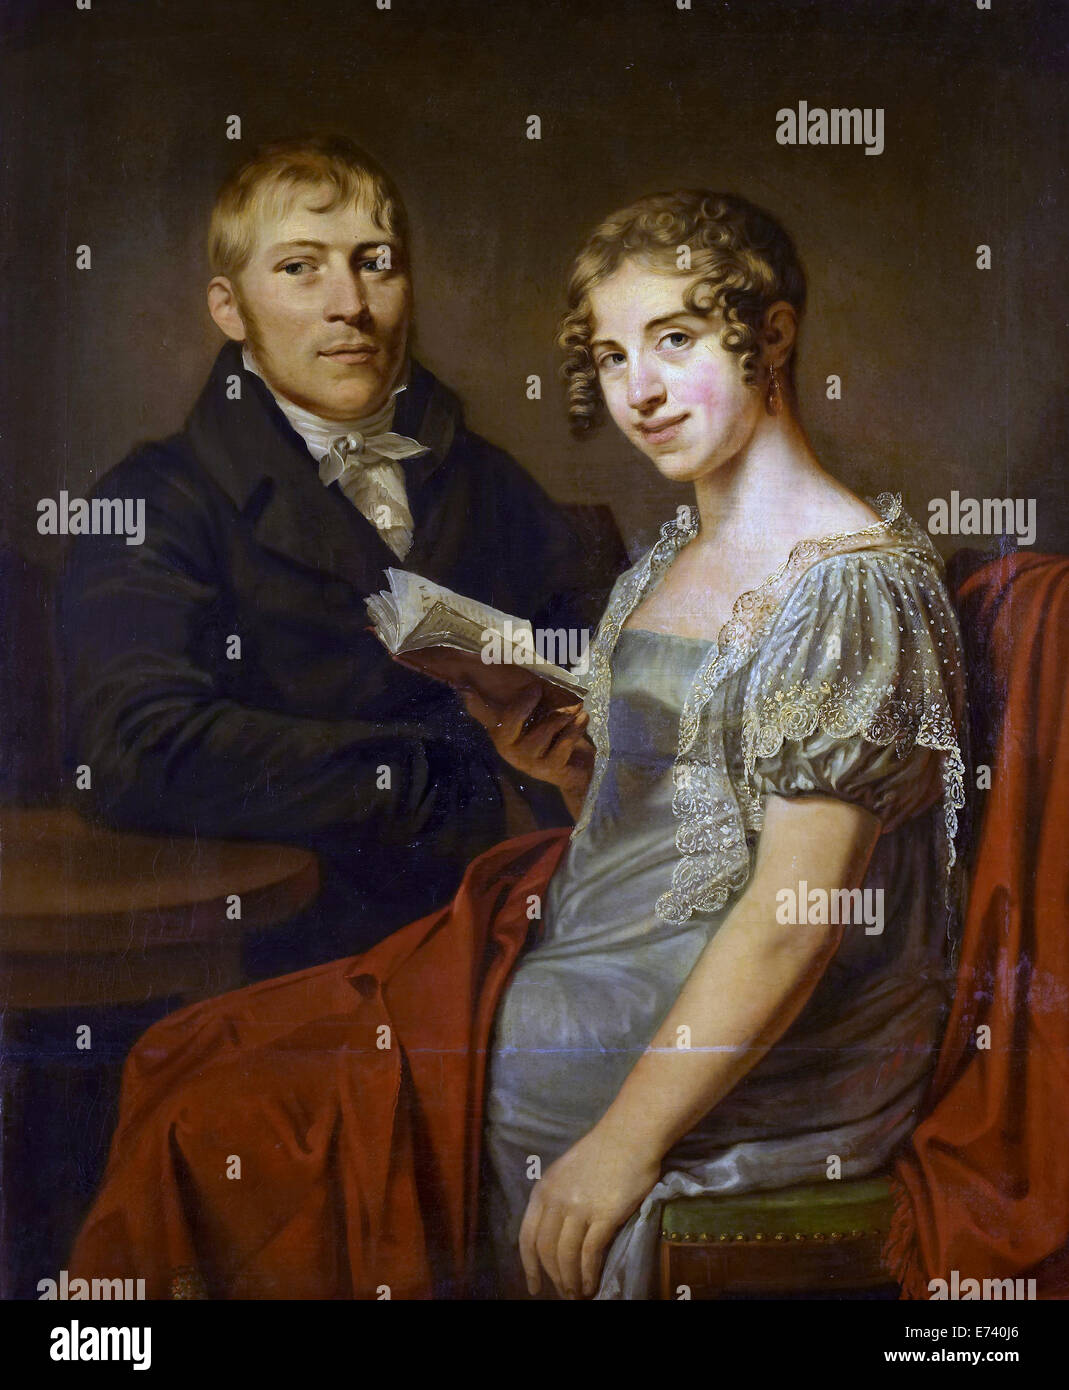 Henry Arend van den Brink and his wife Lucretia Johanna van de Poll - by Louis Moritz, 1805 - 1830 Stock Photo